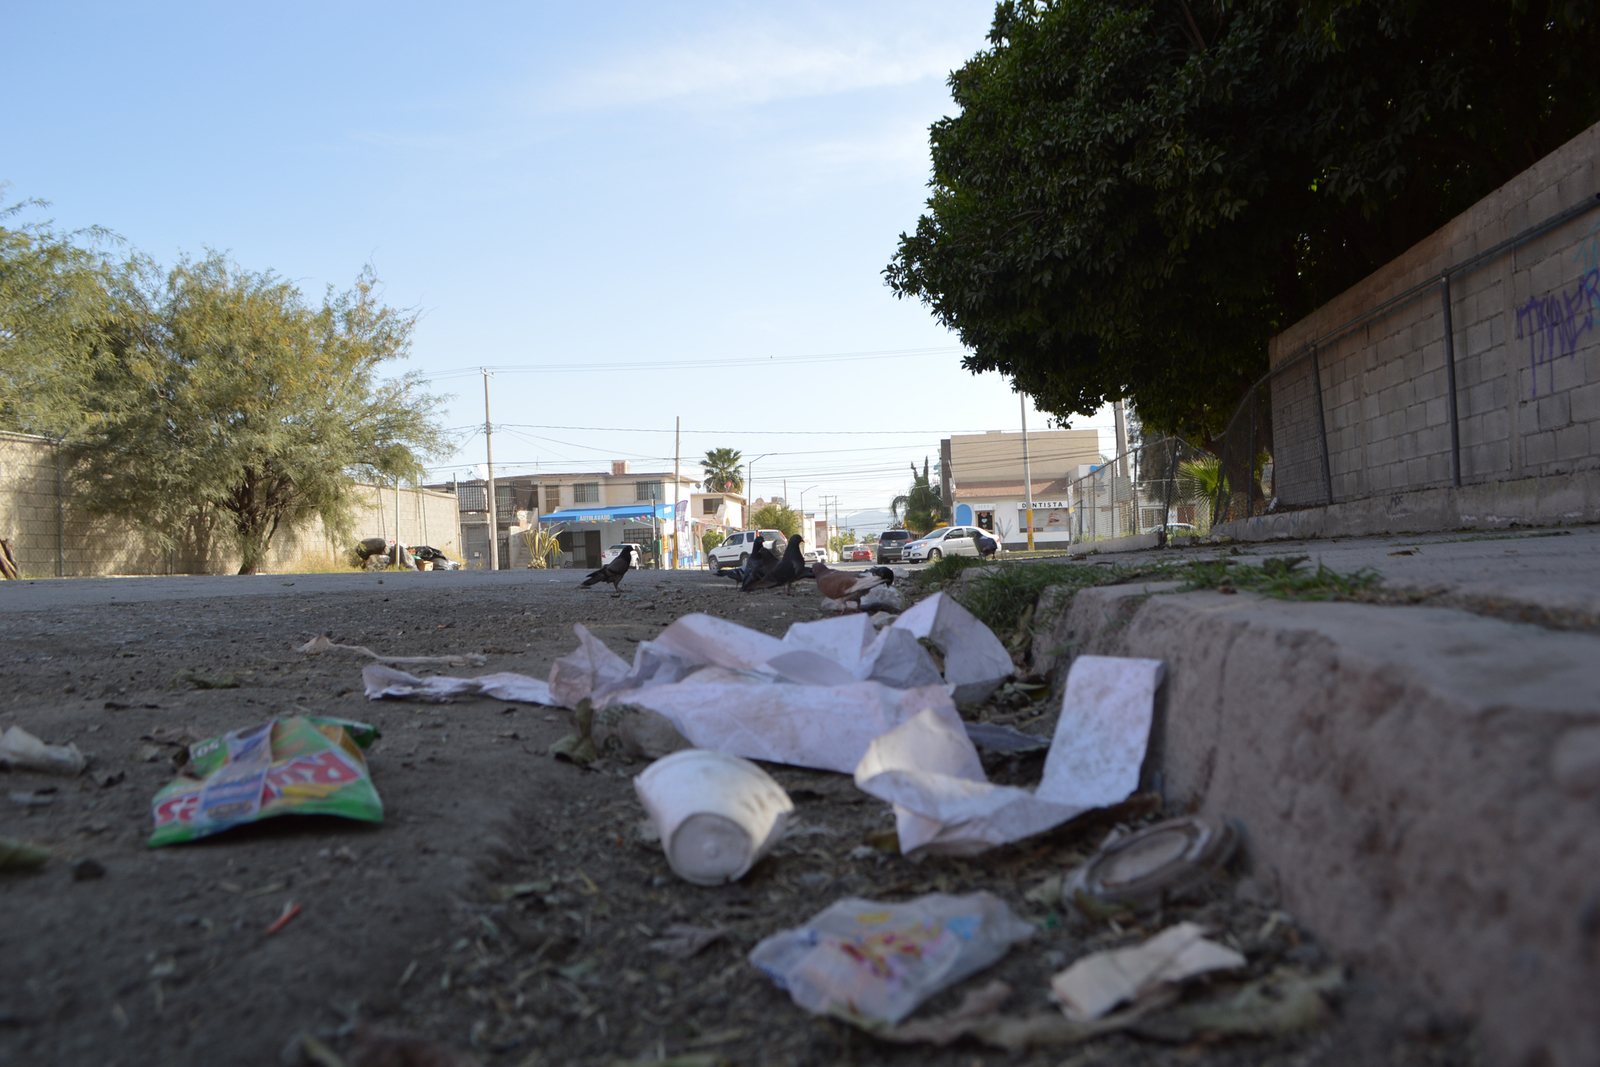 La basura se acumula en los alrededores del plantel educativo, afirman docentes que los comerciantes no utilizan contenedores. (ROBERTO ITURRIAGA)